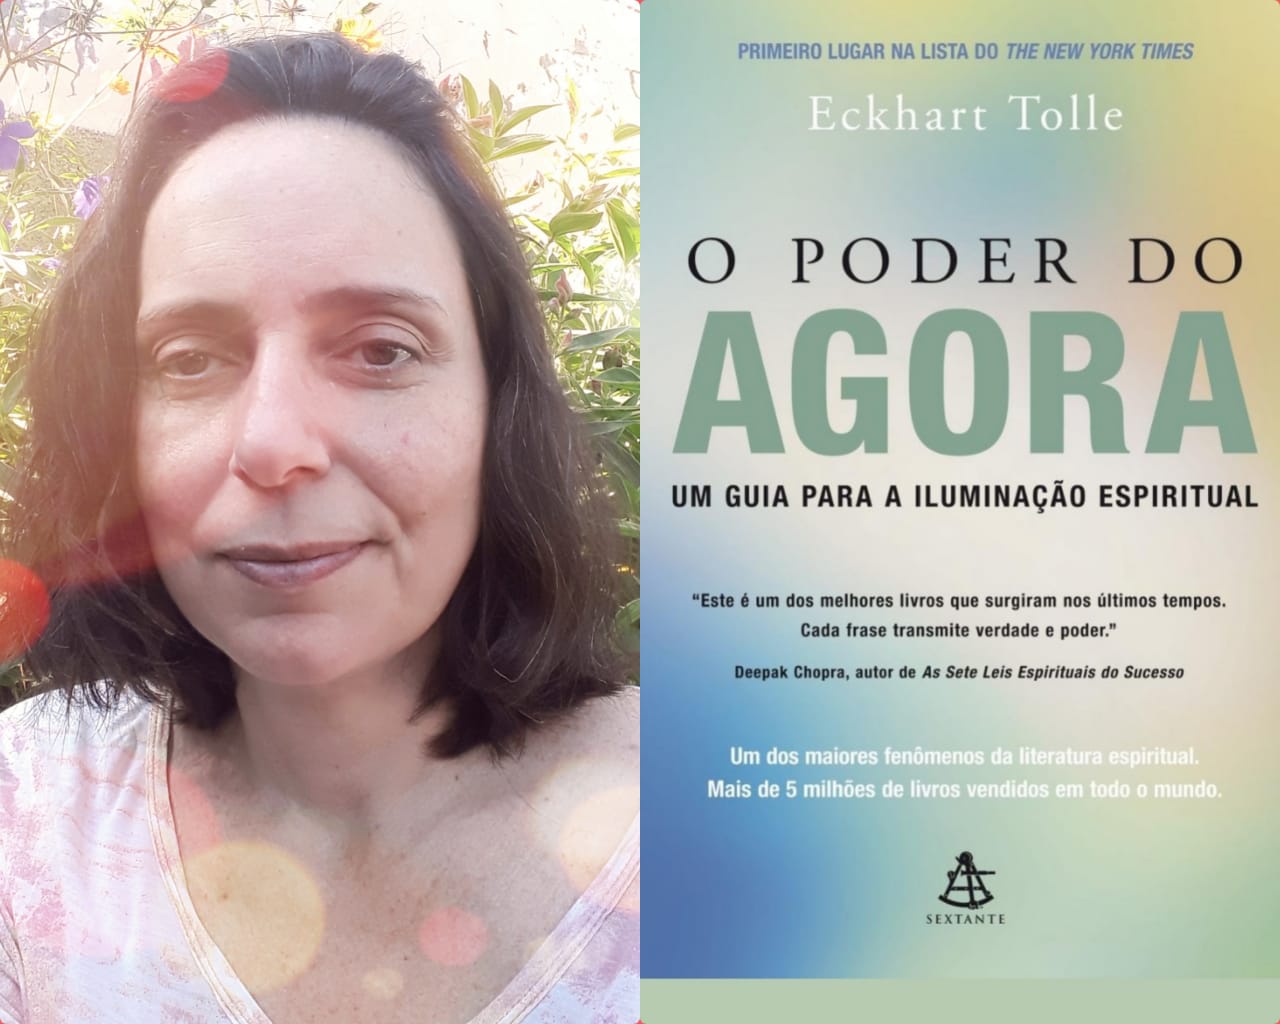 Maria Madureira fala sobre o livro "O Poder do Agora" do autor Eckhart Tolle